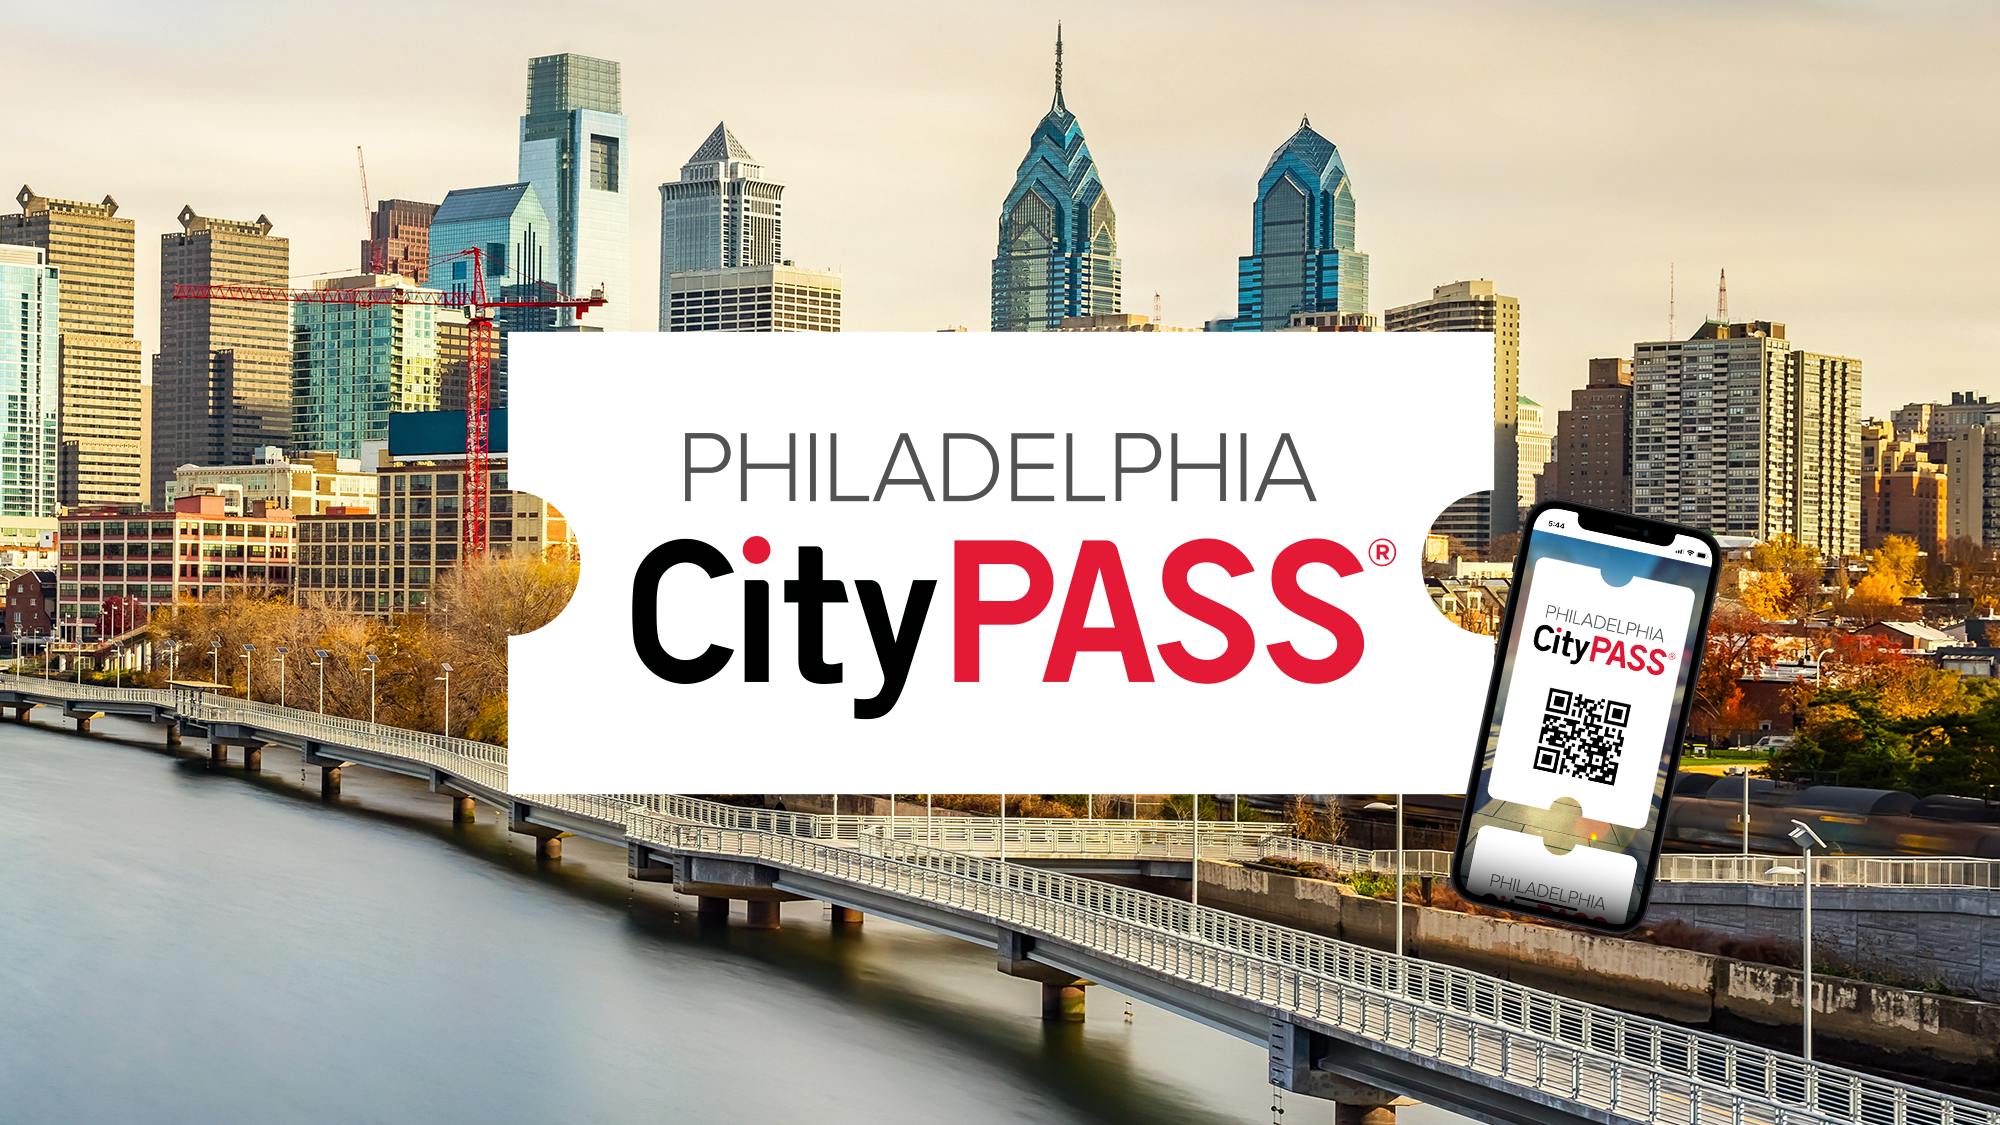 Filadelfia CityPASS®